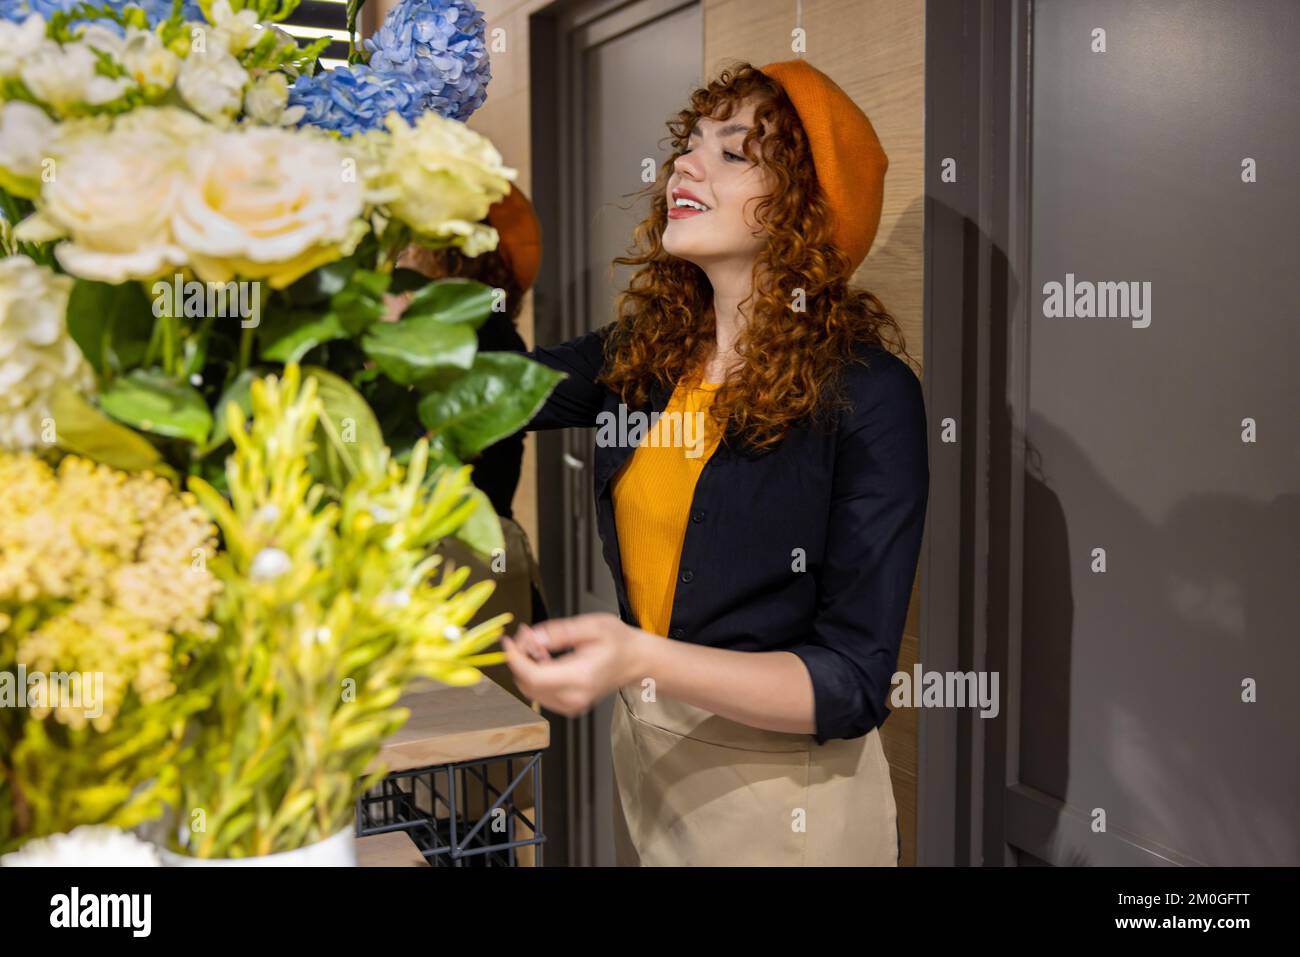 Chica bonita en una boina naranja en una floristería Foto de stock